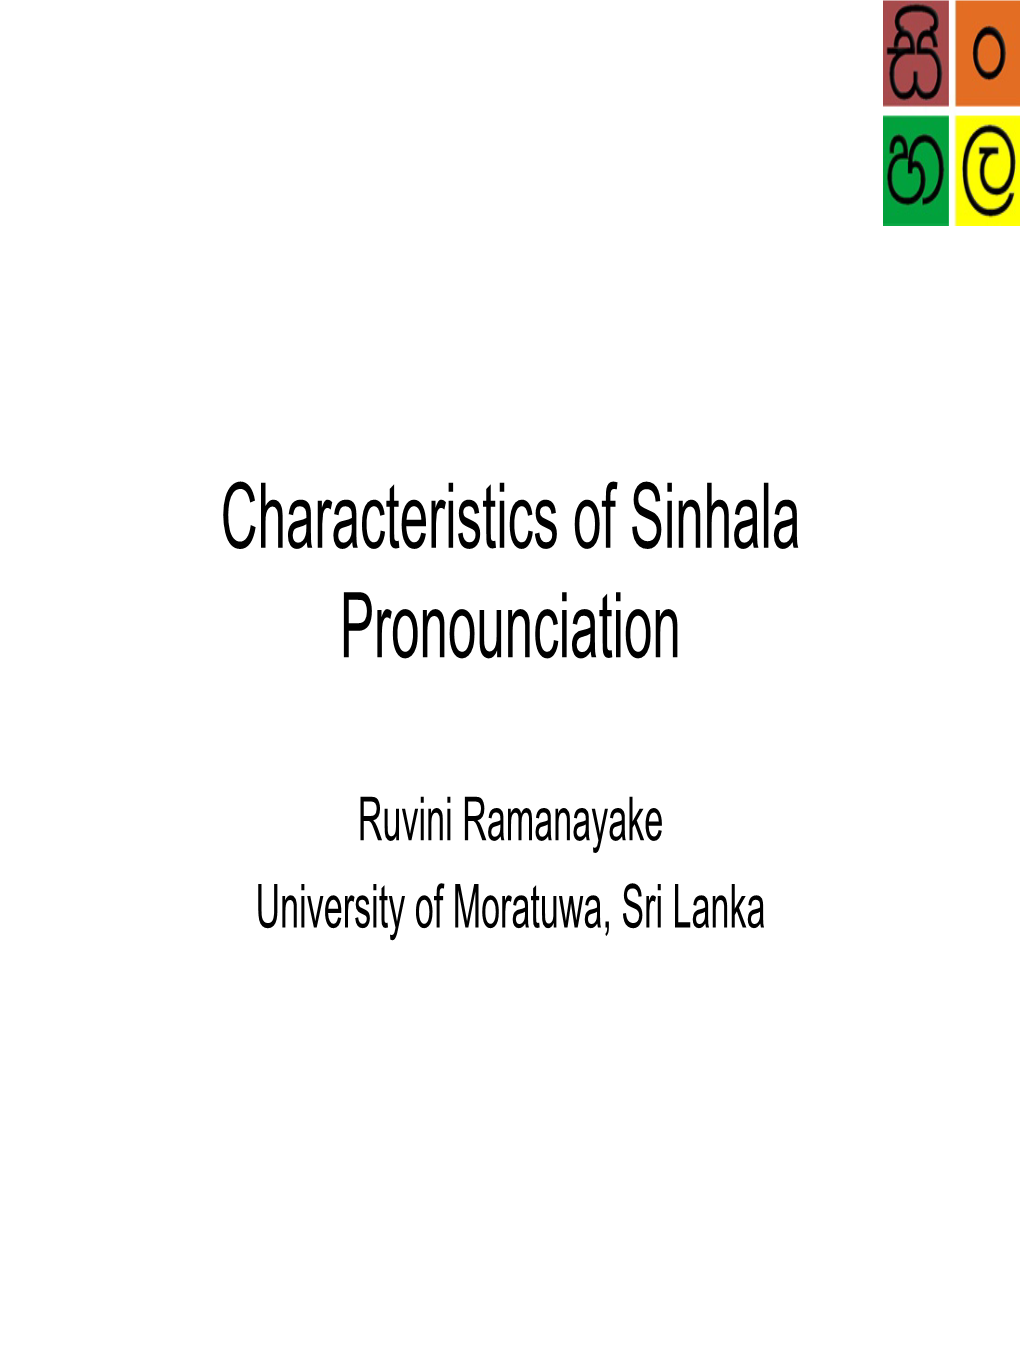 Unique Features of Sinhala